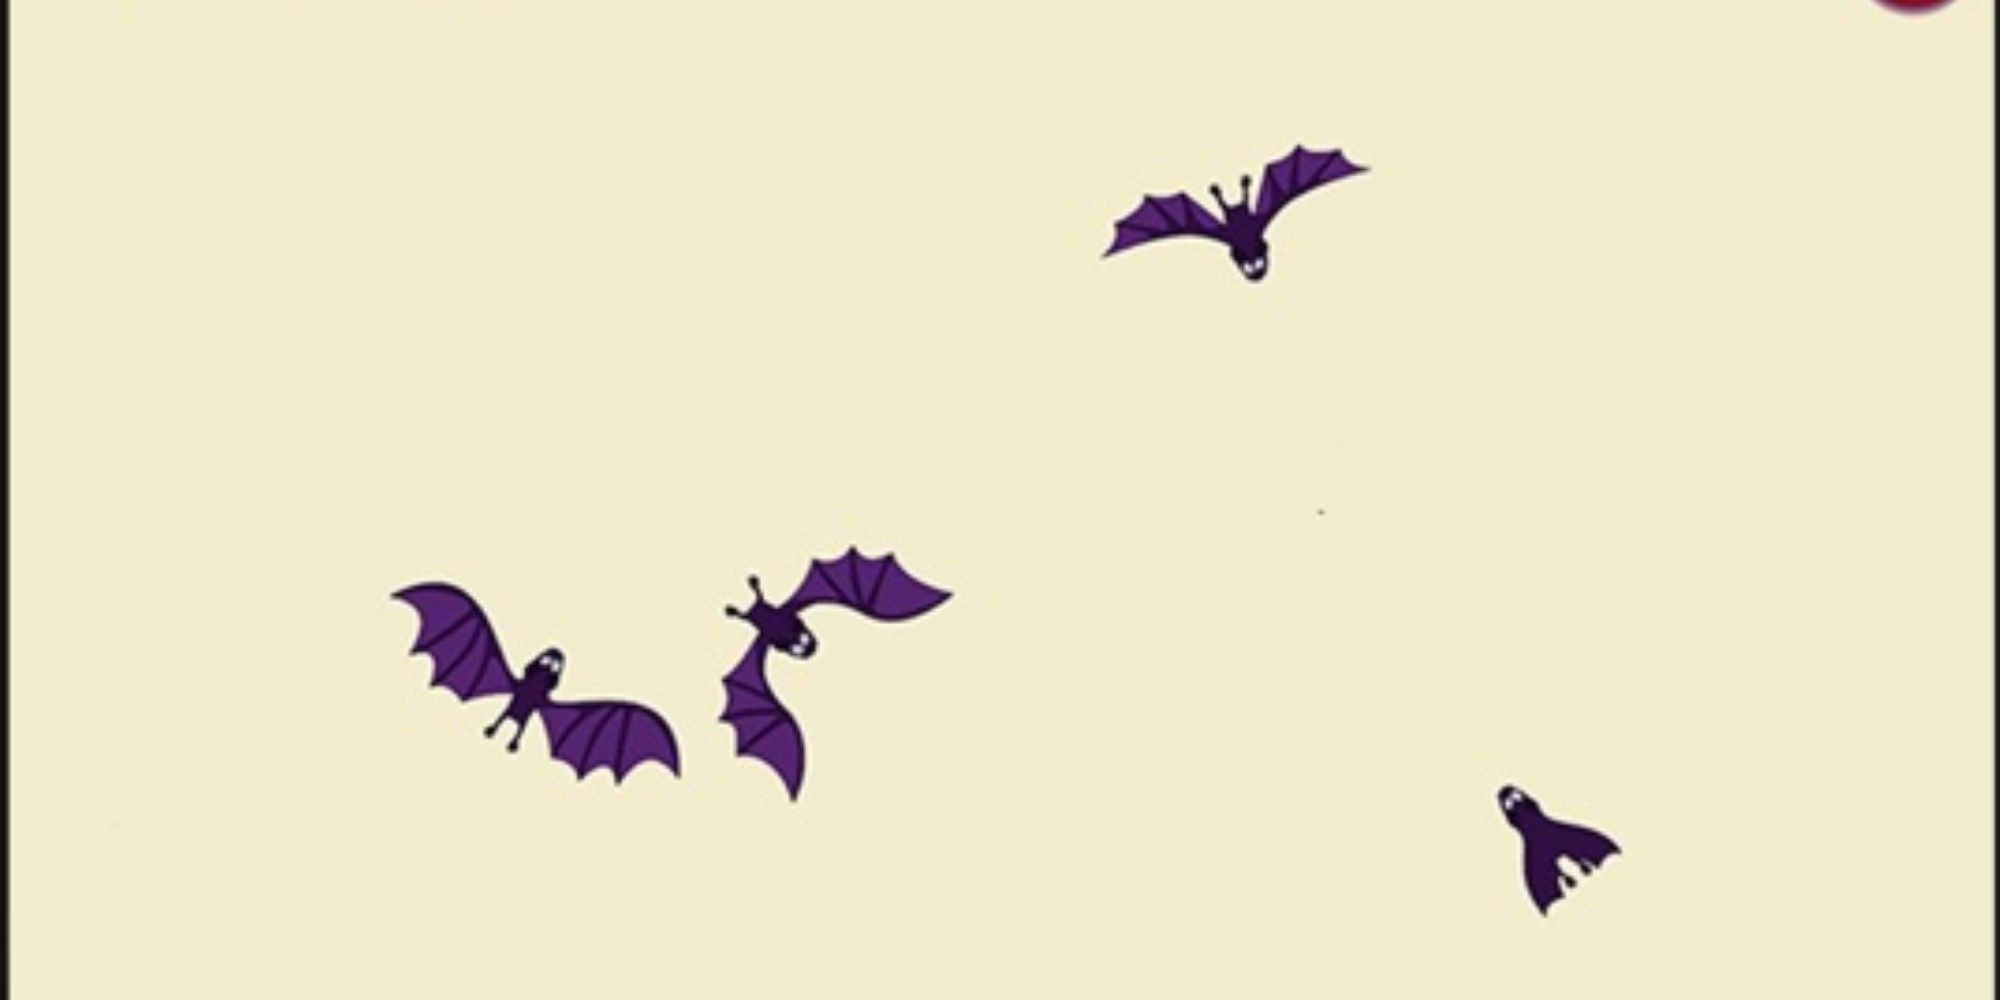 Los murciélagos 2d vuelan frente a un fondo crema.